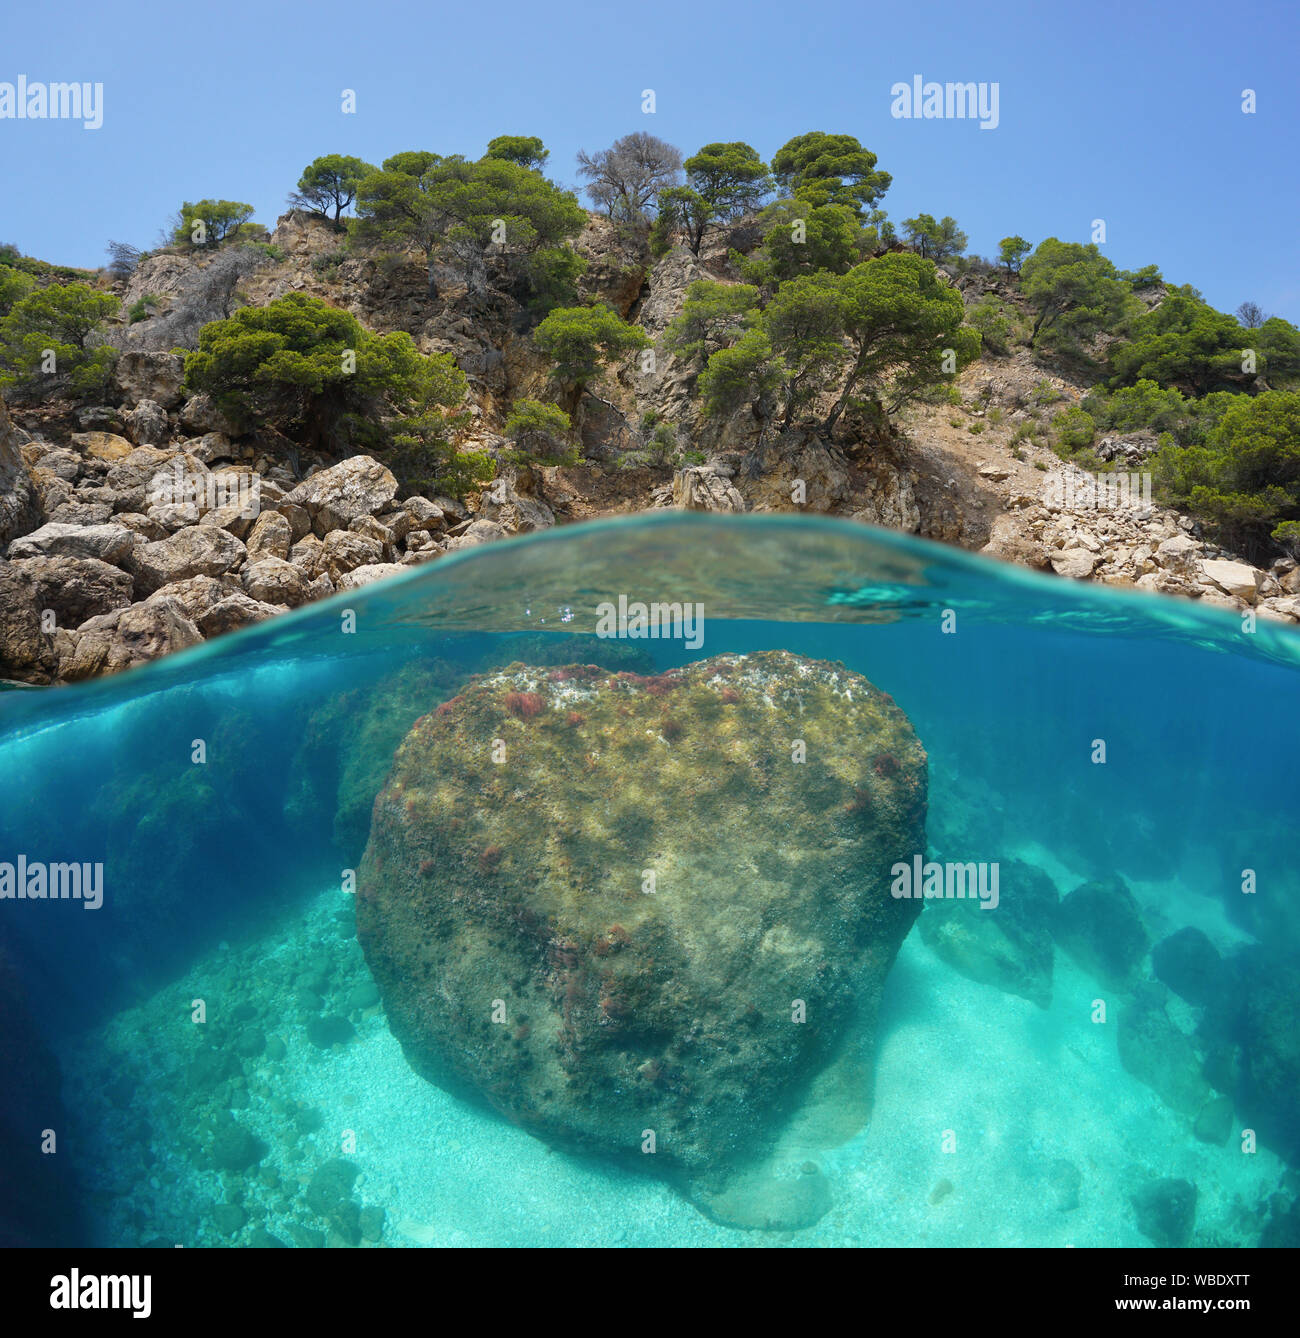 Espagne, Costa Brava, côte rocheuse avec un gros rocher sous l'eau, vue fractionnée au-dessus et au-dessous de la surface de l'eau, mer Méditerranée, Roses, Catalogne Banque D'Images